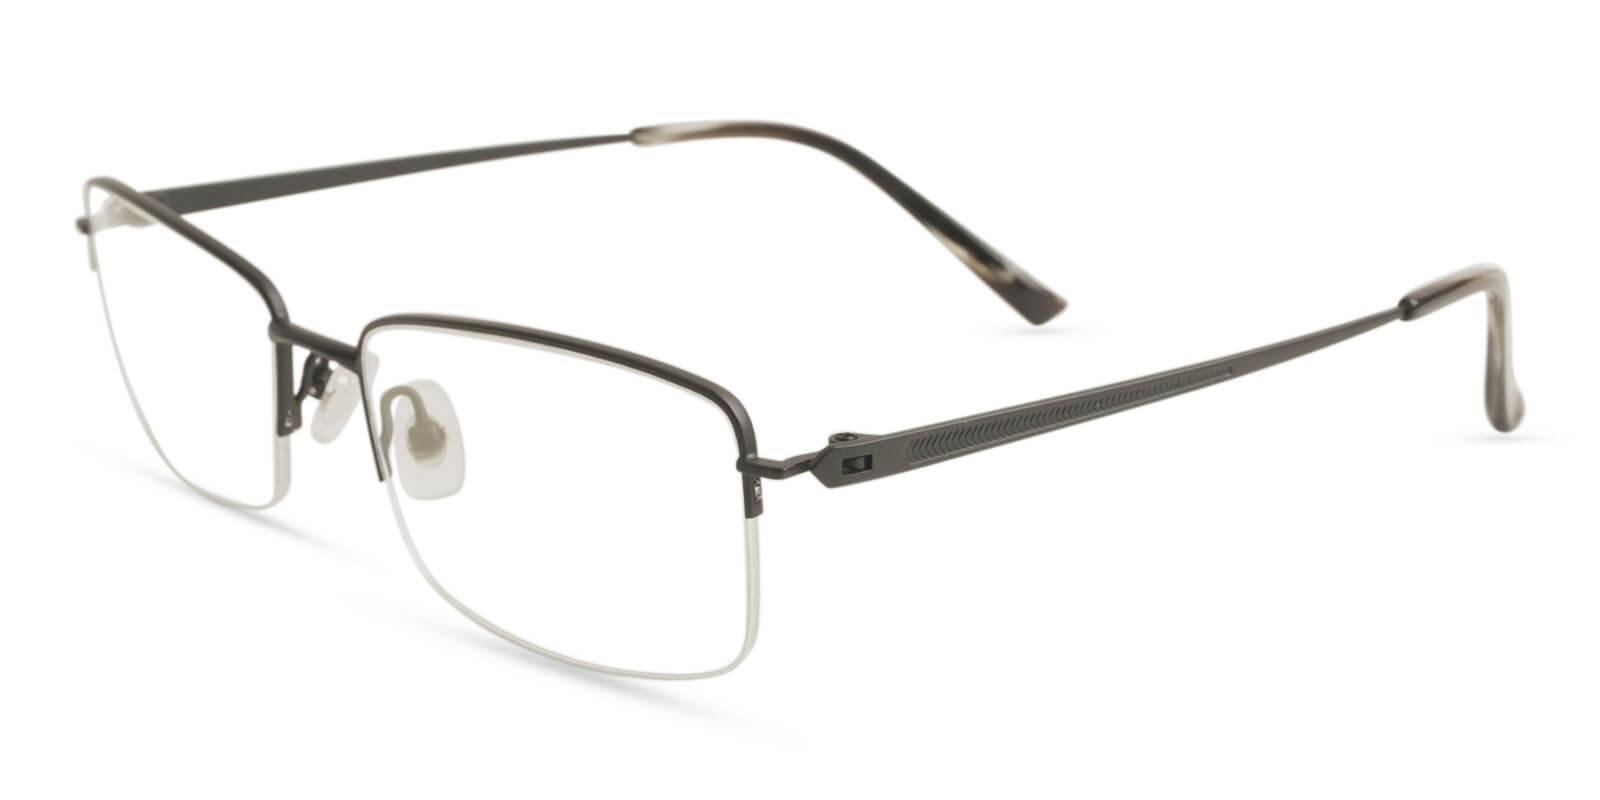 Oliver Black Titanium Eyeglasses , NosePads Frames from ABBE Glasses